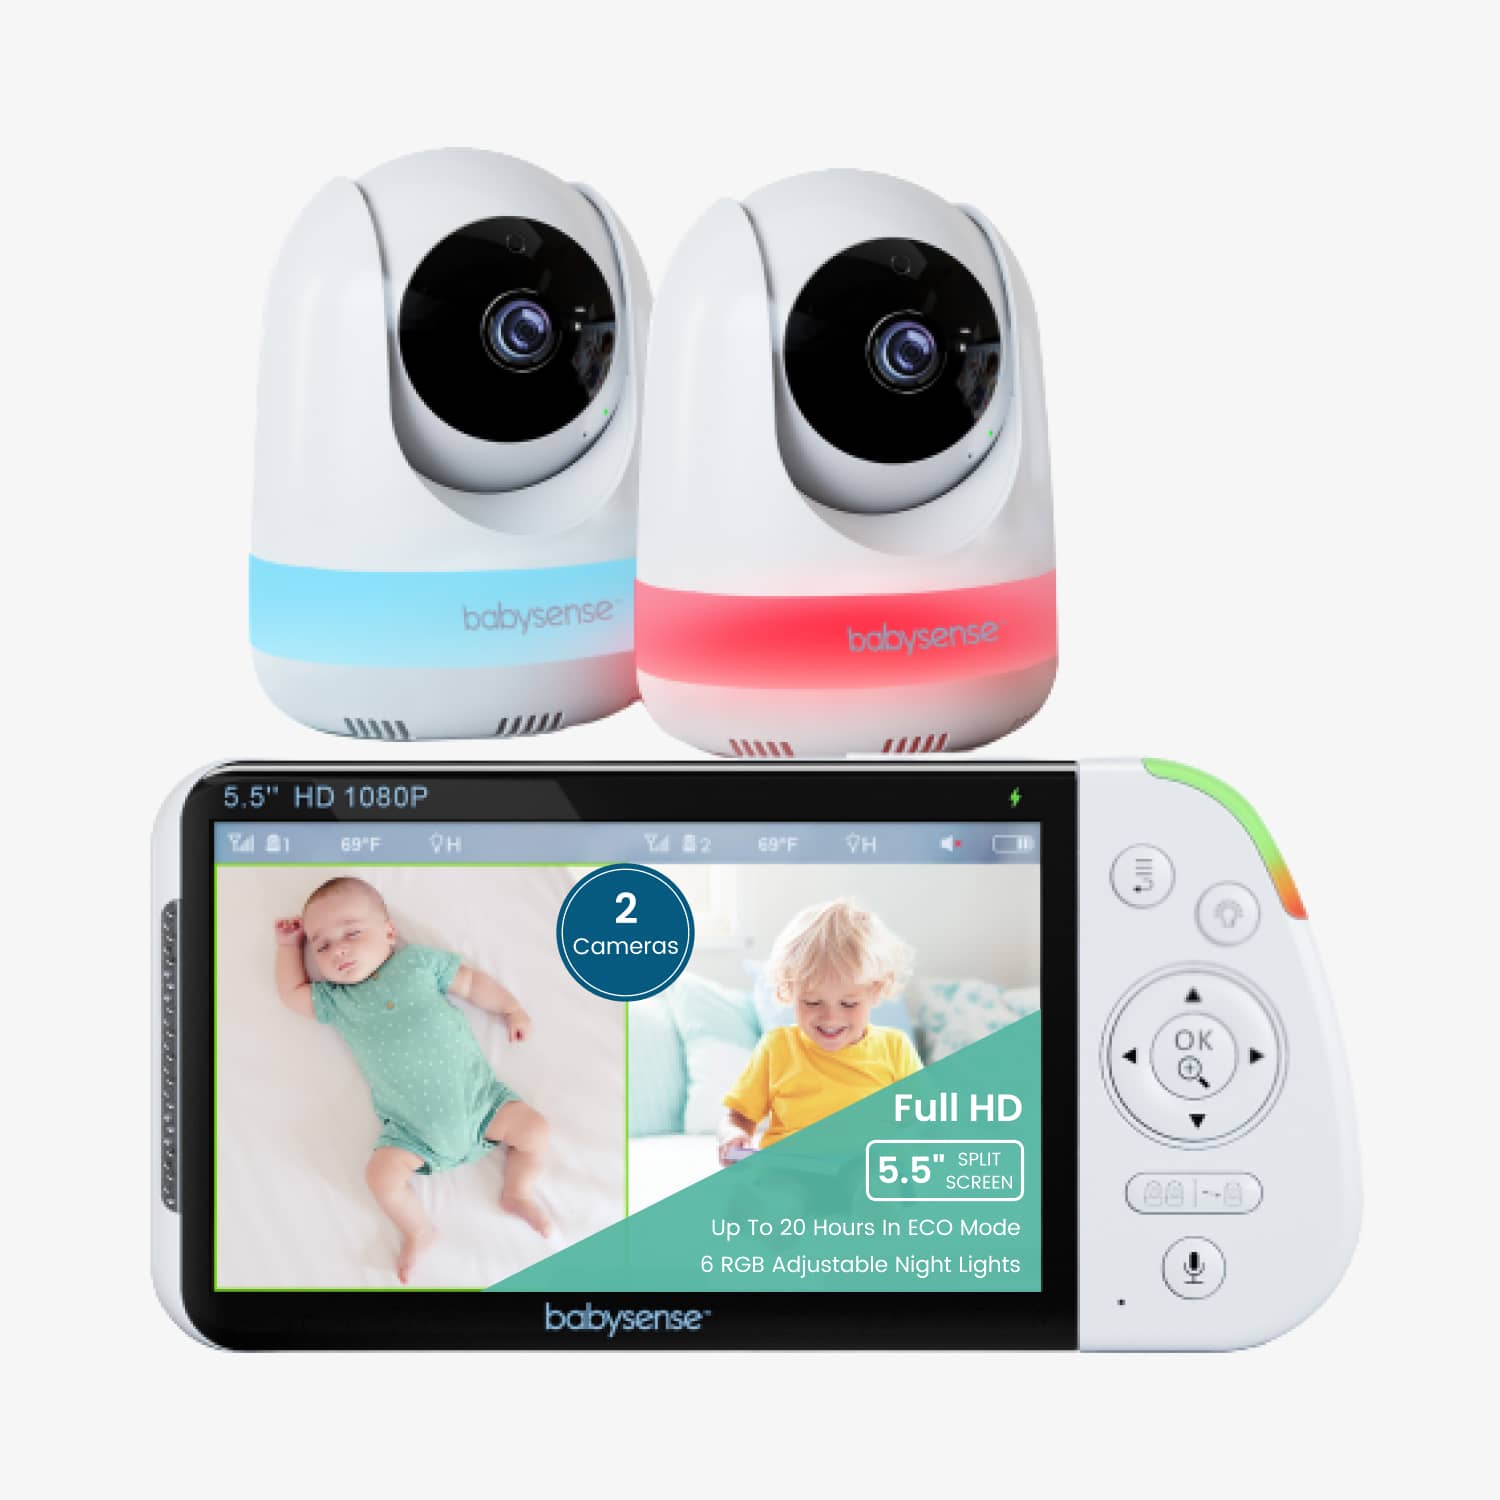 Maxview Baby Monitor 5,5 pouces 1080p Full HD, bruit blanc, écran partagé avec 2 caméras